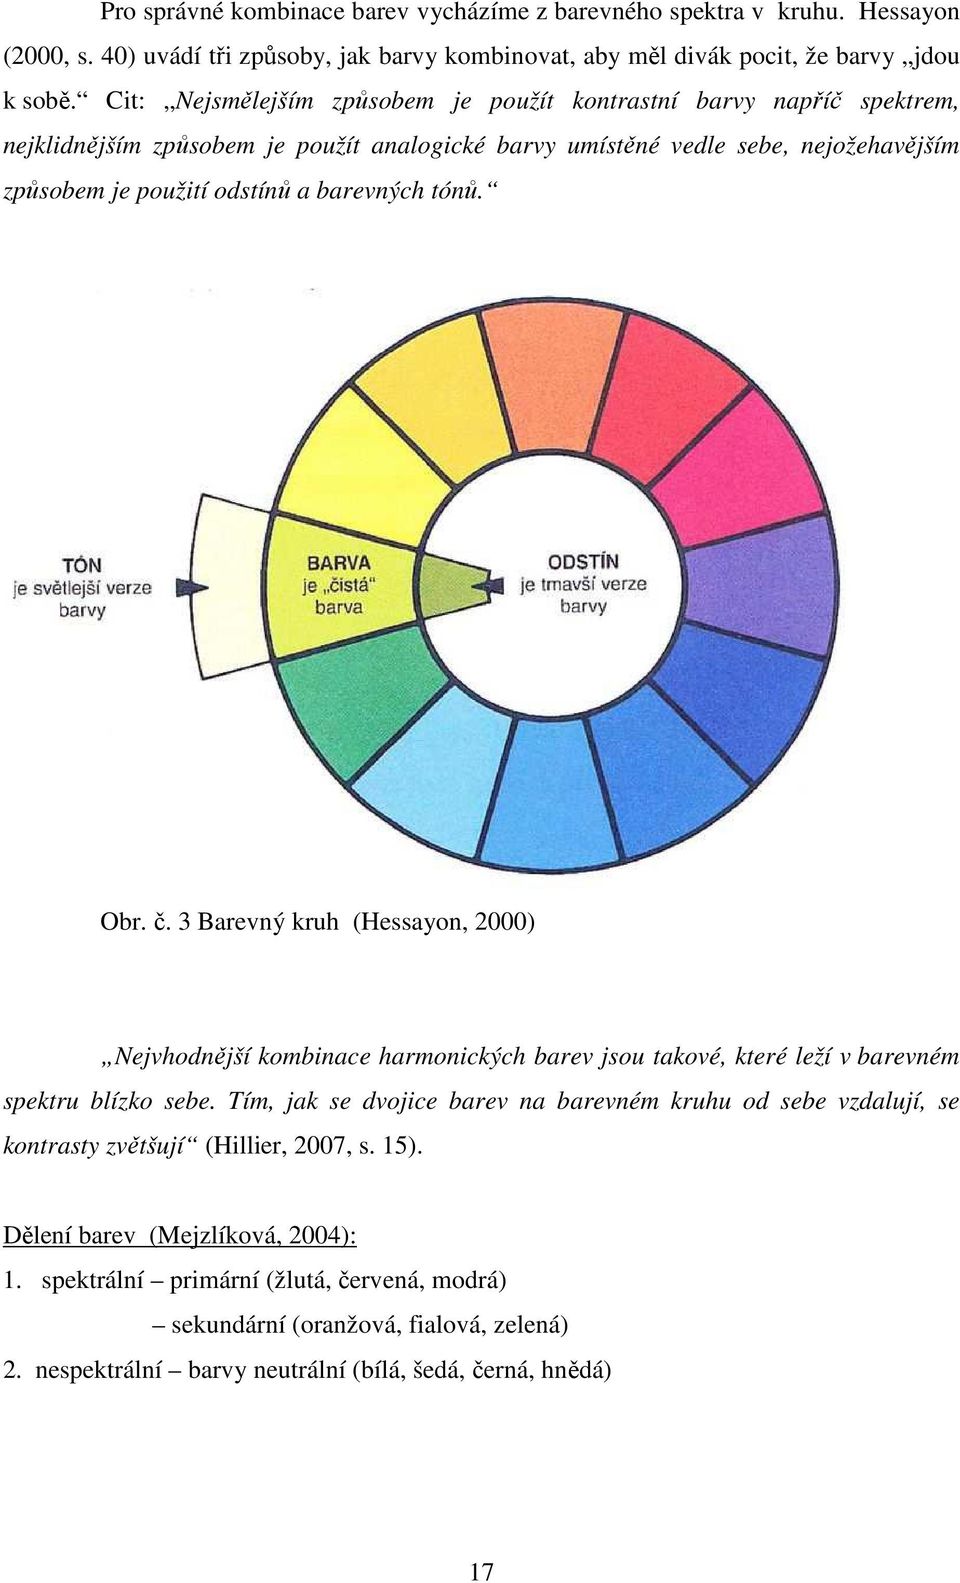 tónů. Obr. č. 3 Barevný kruh (Hessayon, 2000) Nejvhodnější kombinace harmonických barev jsou takové, které leží v barevném spektru blízko sebe.